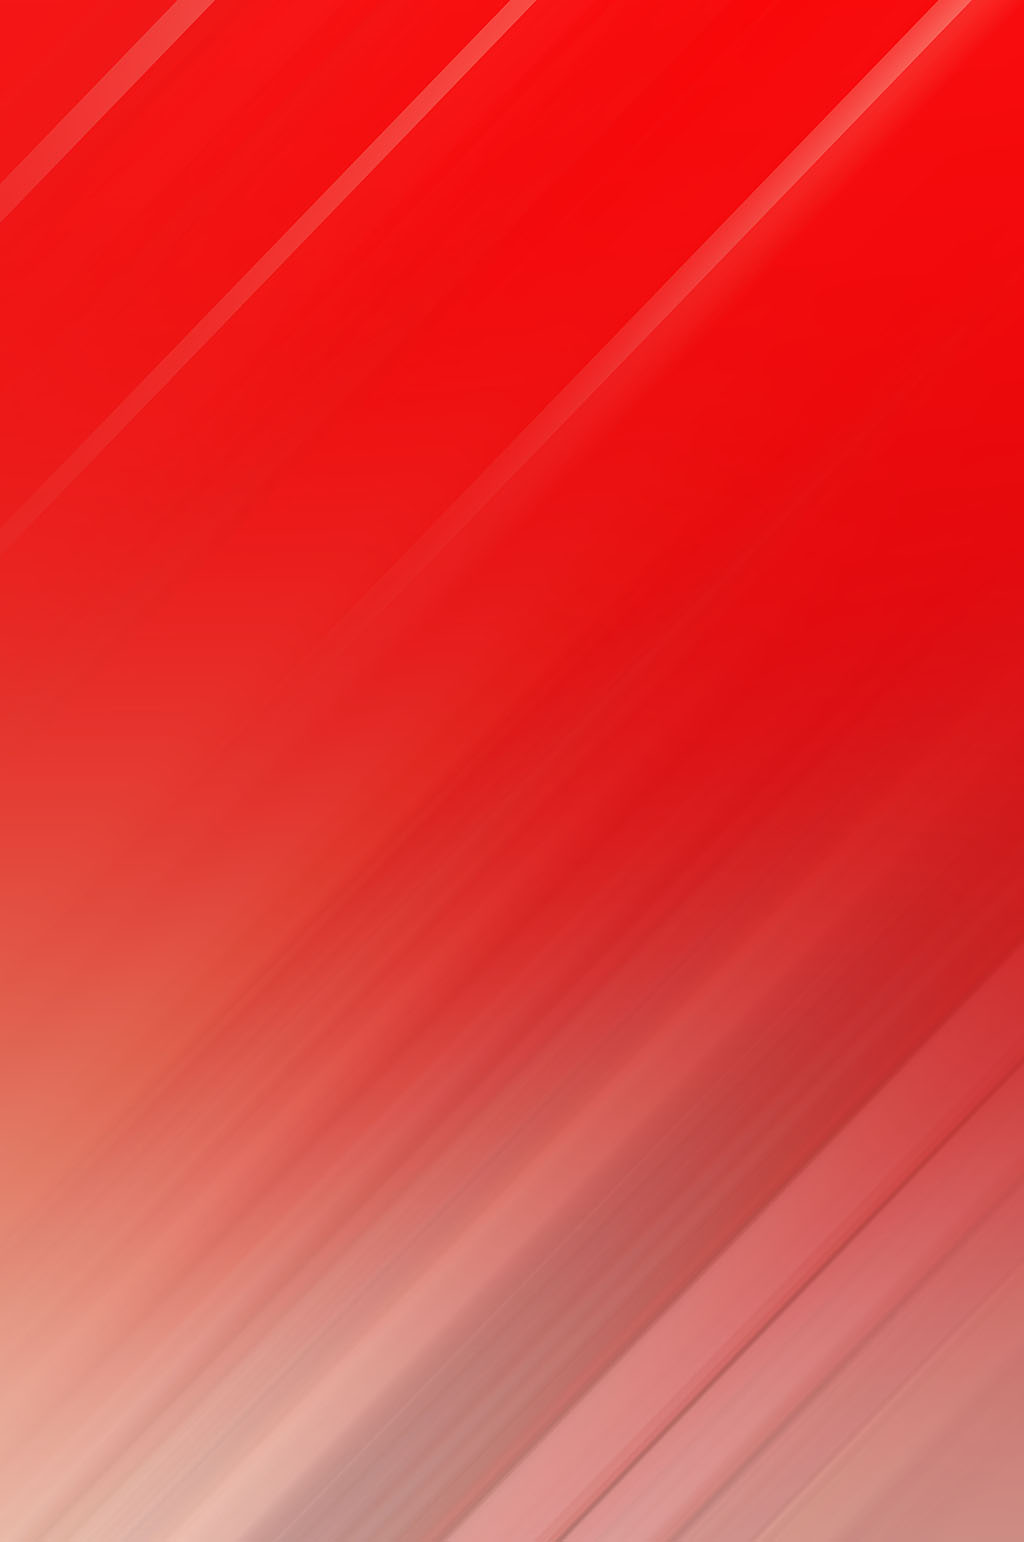 大气红色中国红纯色渐变底纹免抠背景图正版作品,可商用大气红色中国